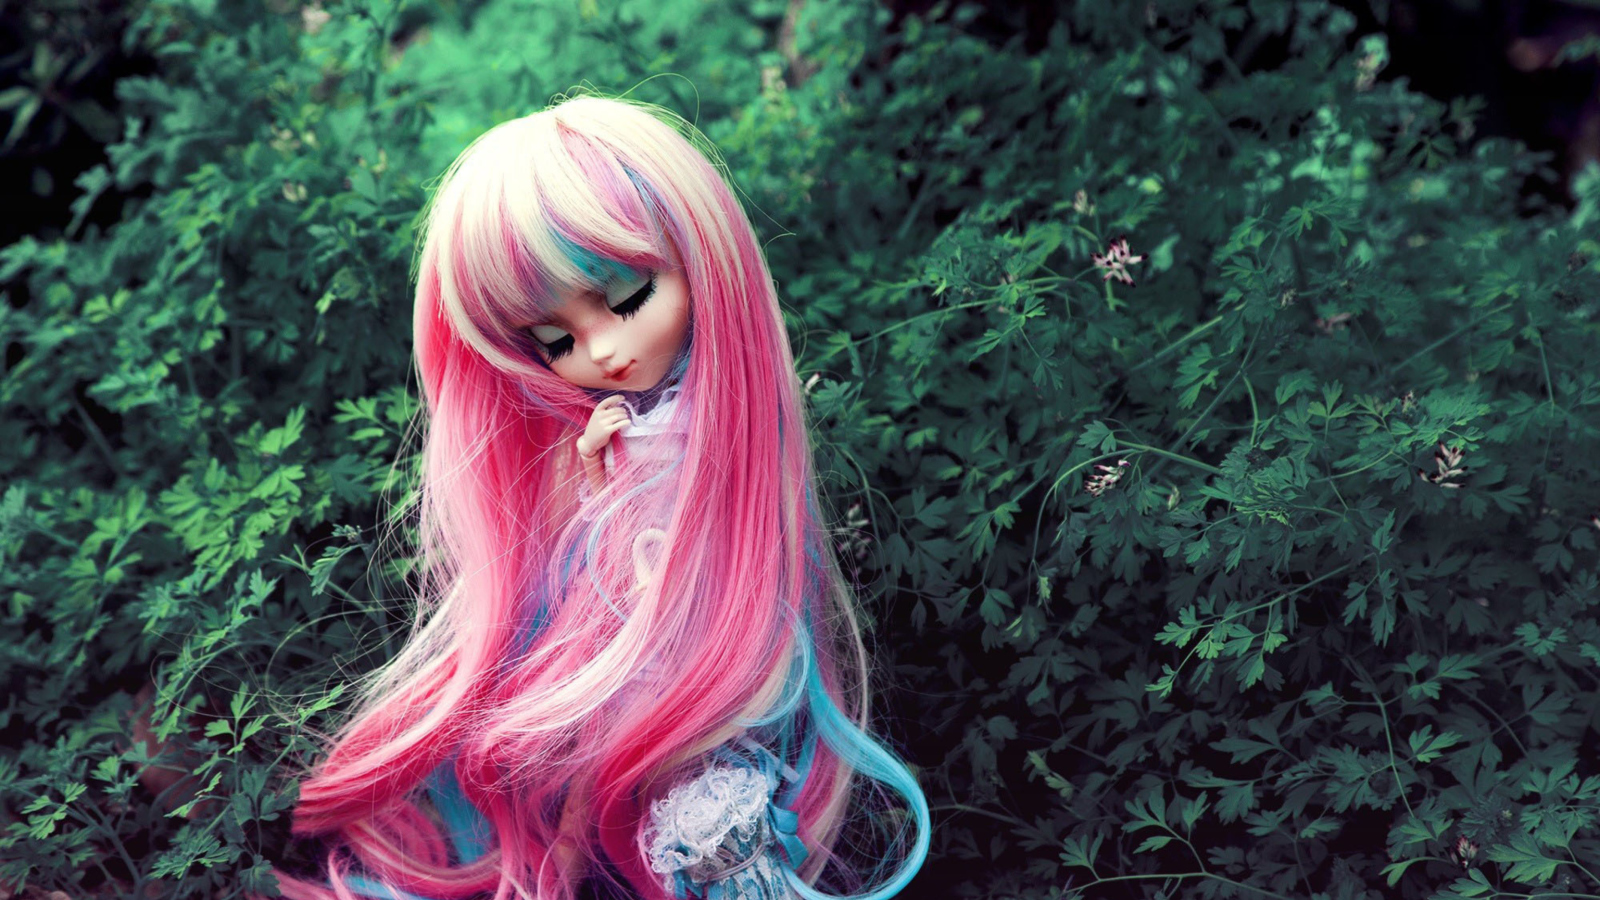 Обои Doll With Pink Hair 1600x900